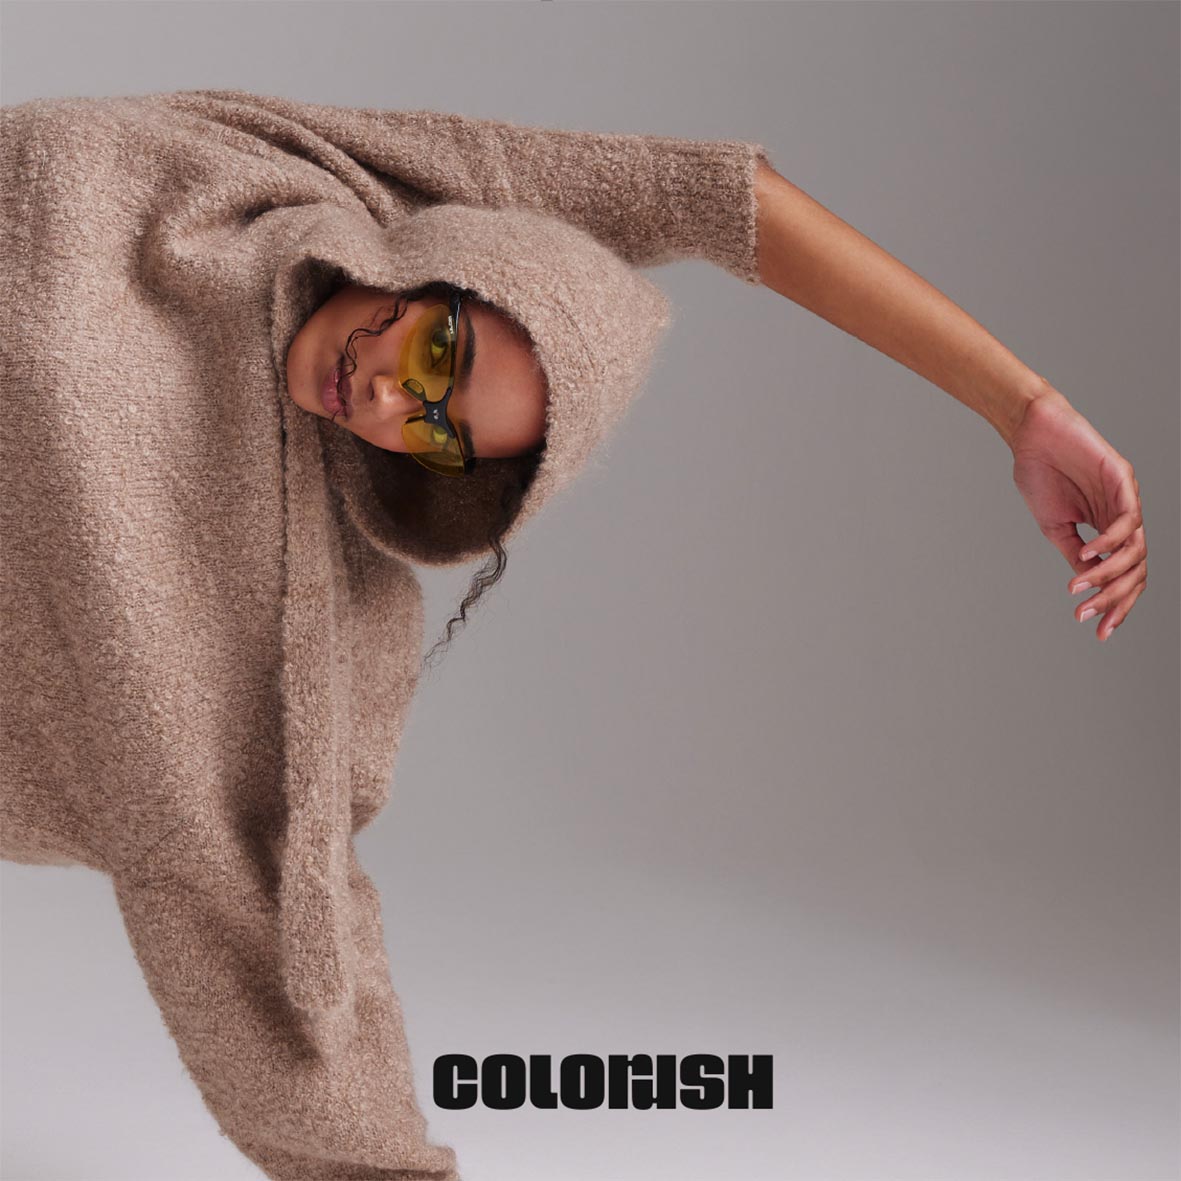 COLORUSH – AW 24